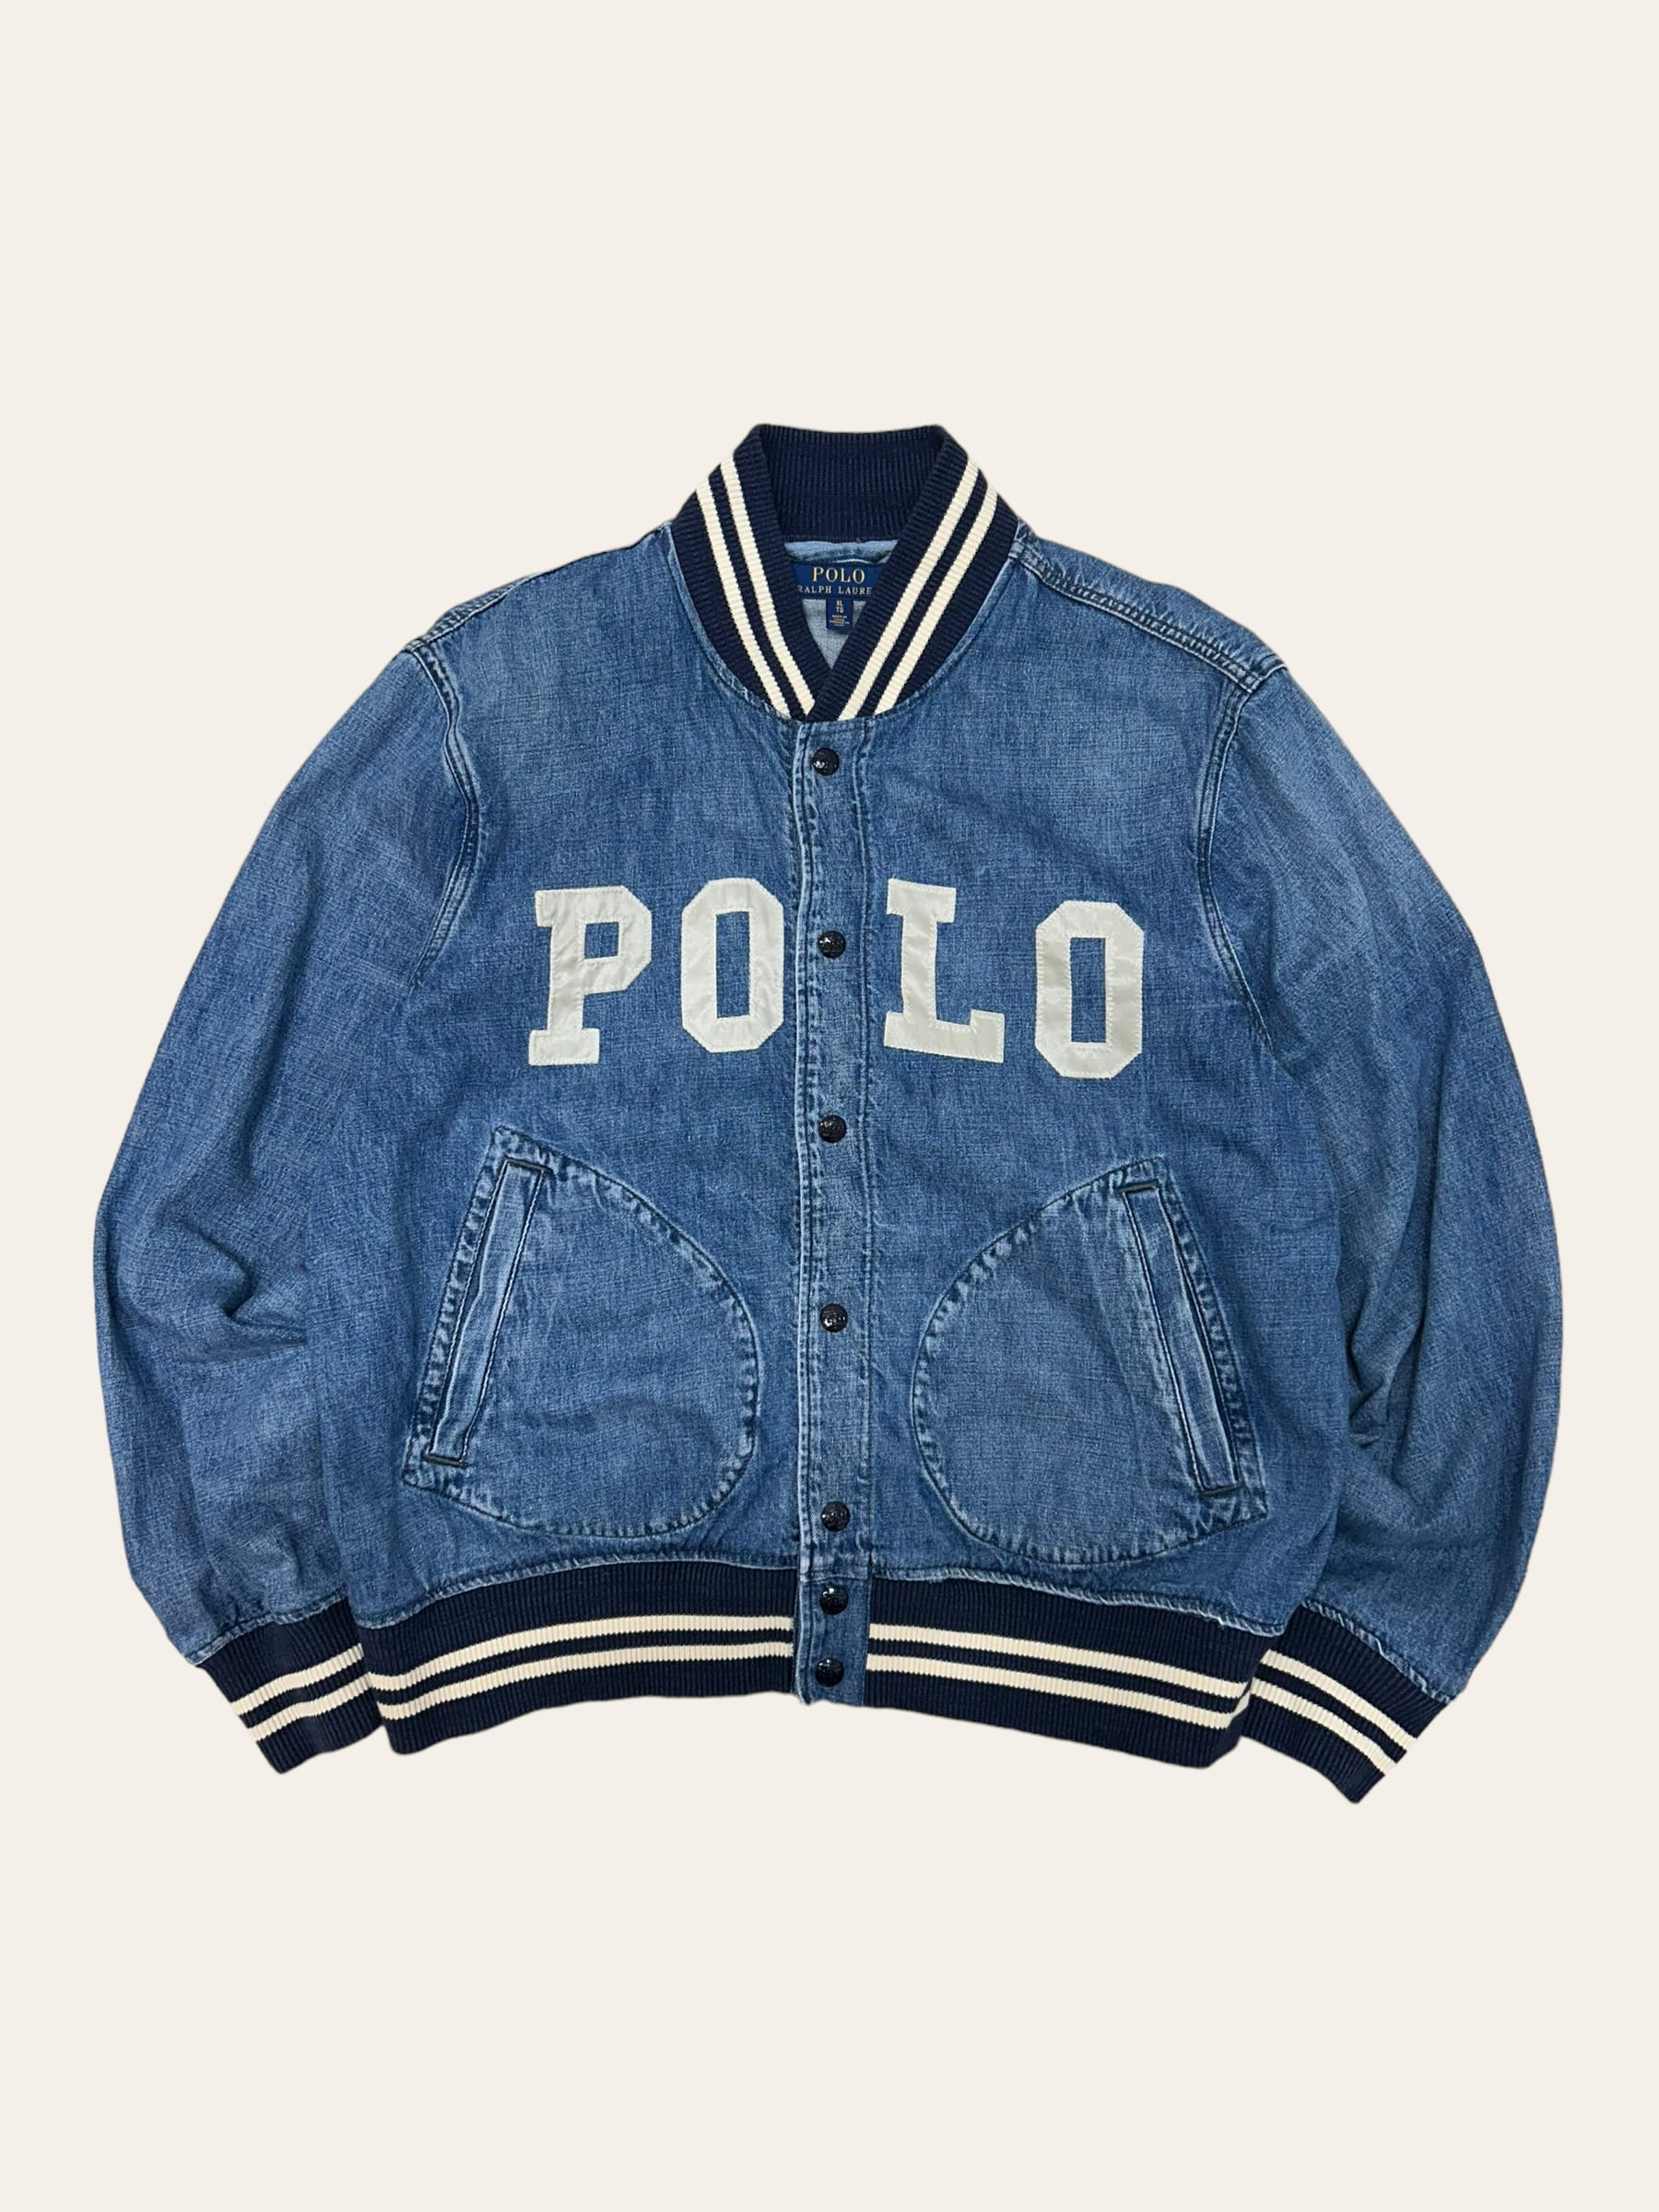 Polo ralph lauren denim spell out stadium jacket XL